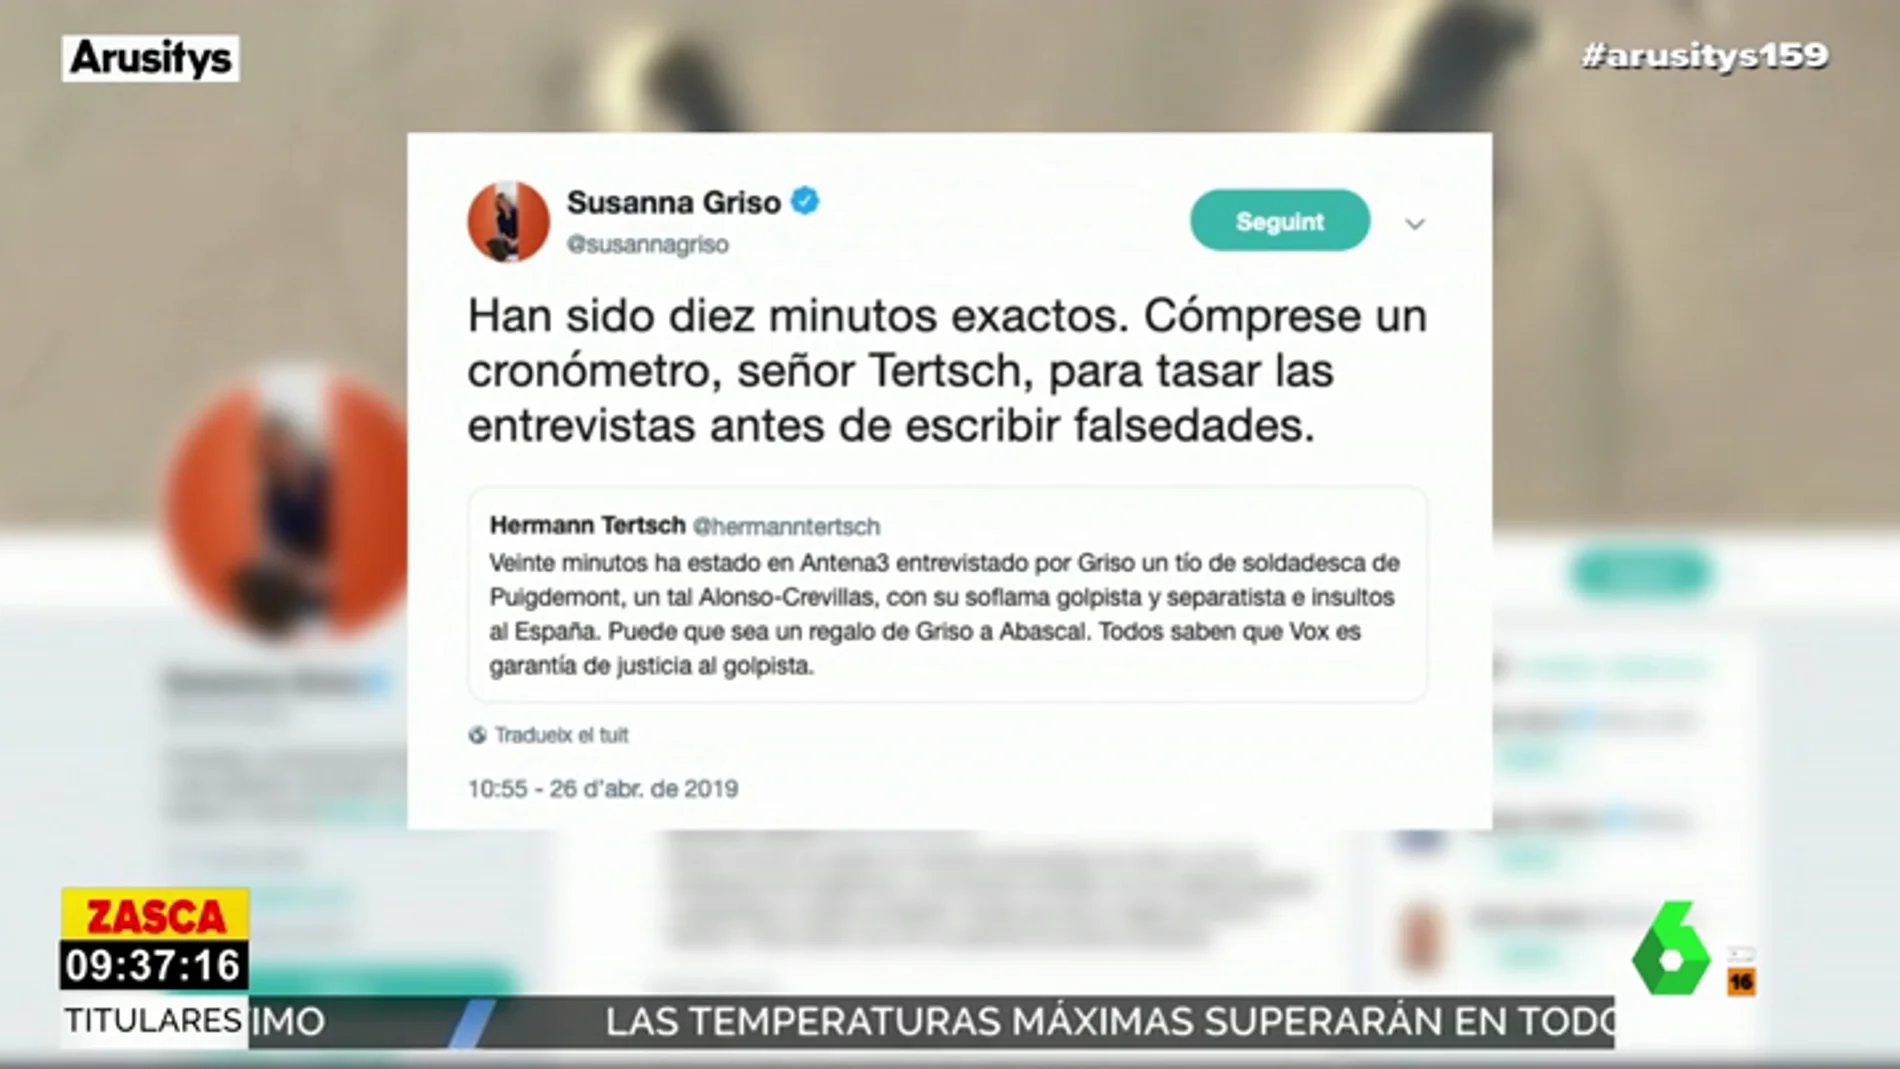 Susanna Griso, a Tertsch tras acusarle de entrevistar durante 20 minutos a Alonso-Crevillas: "Cómprese un cronómetro antes de escribir falsedades"